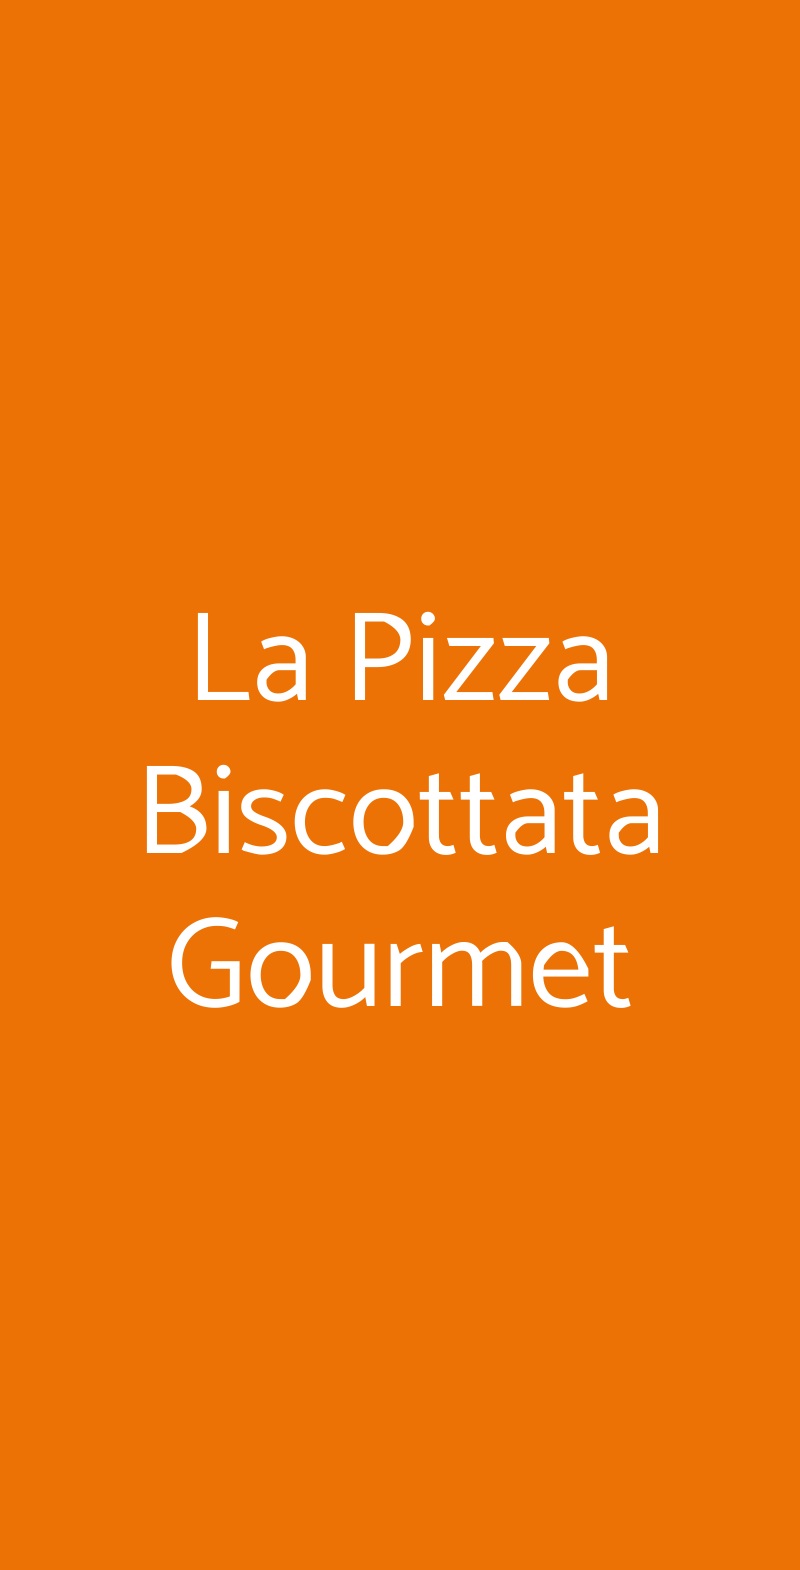 La Pizza Biscottata Gourmet Milano menù 1 pagina